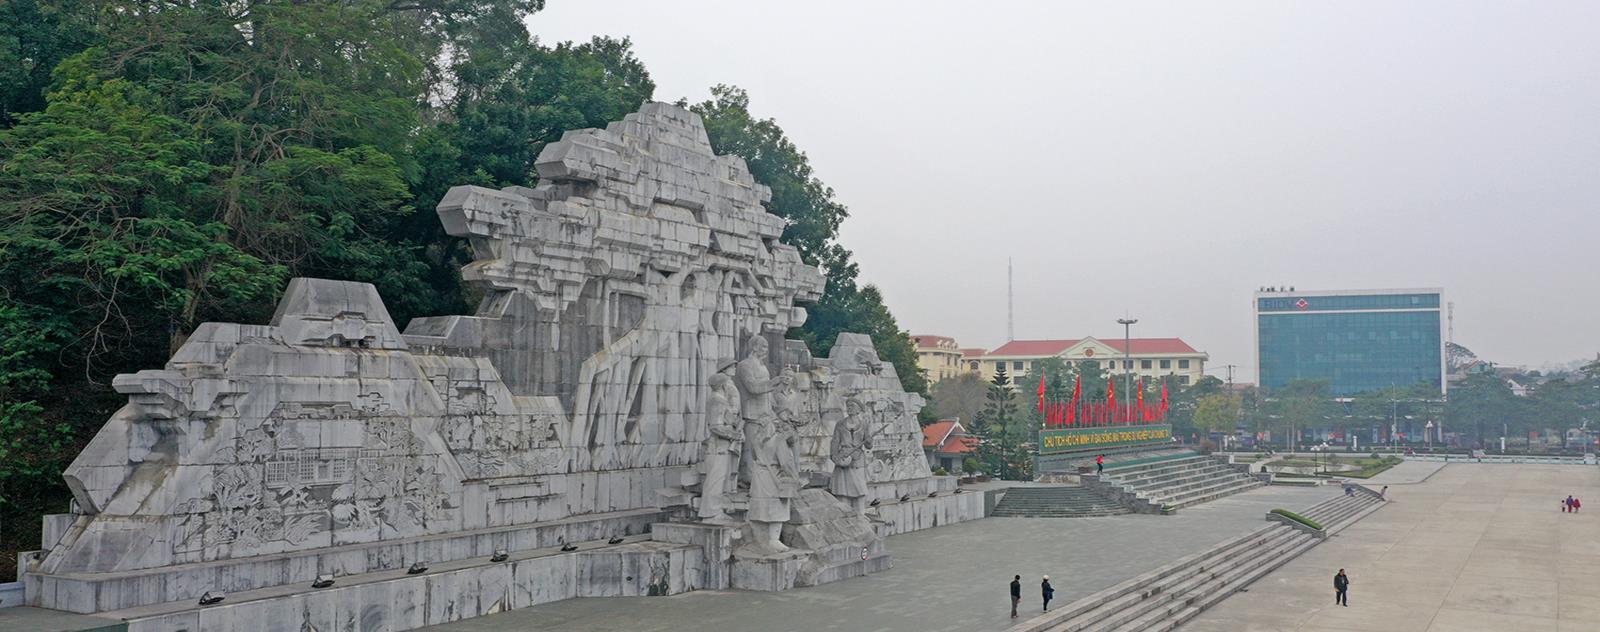 Quảng trường Nguyễn Tất Thành Tuyên Quang